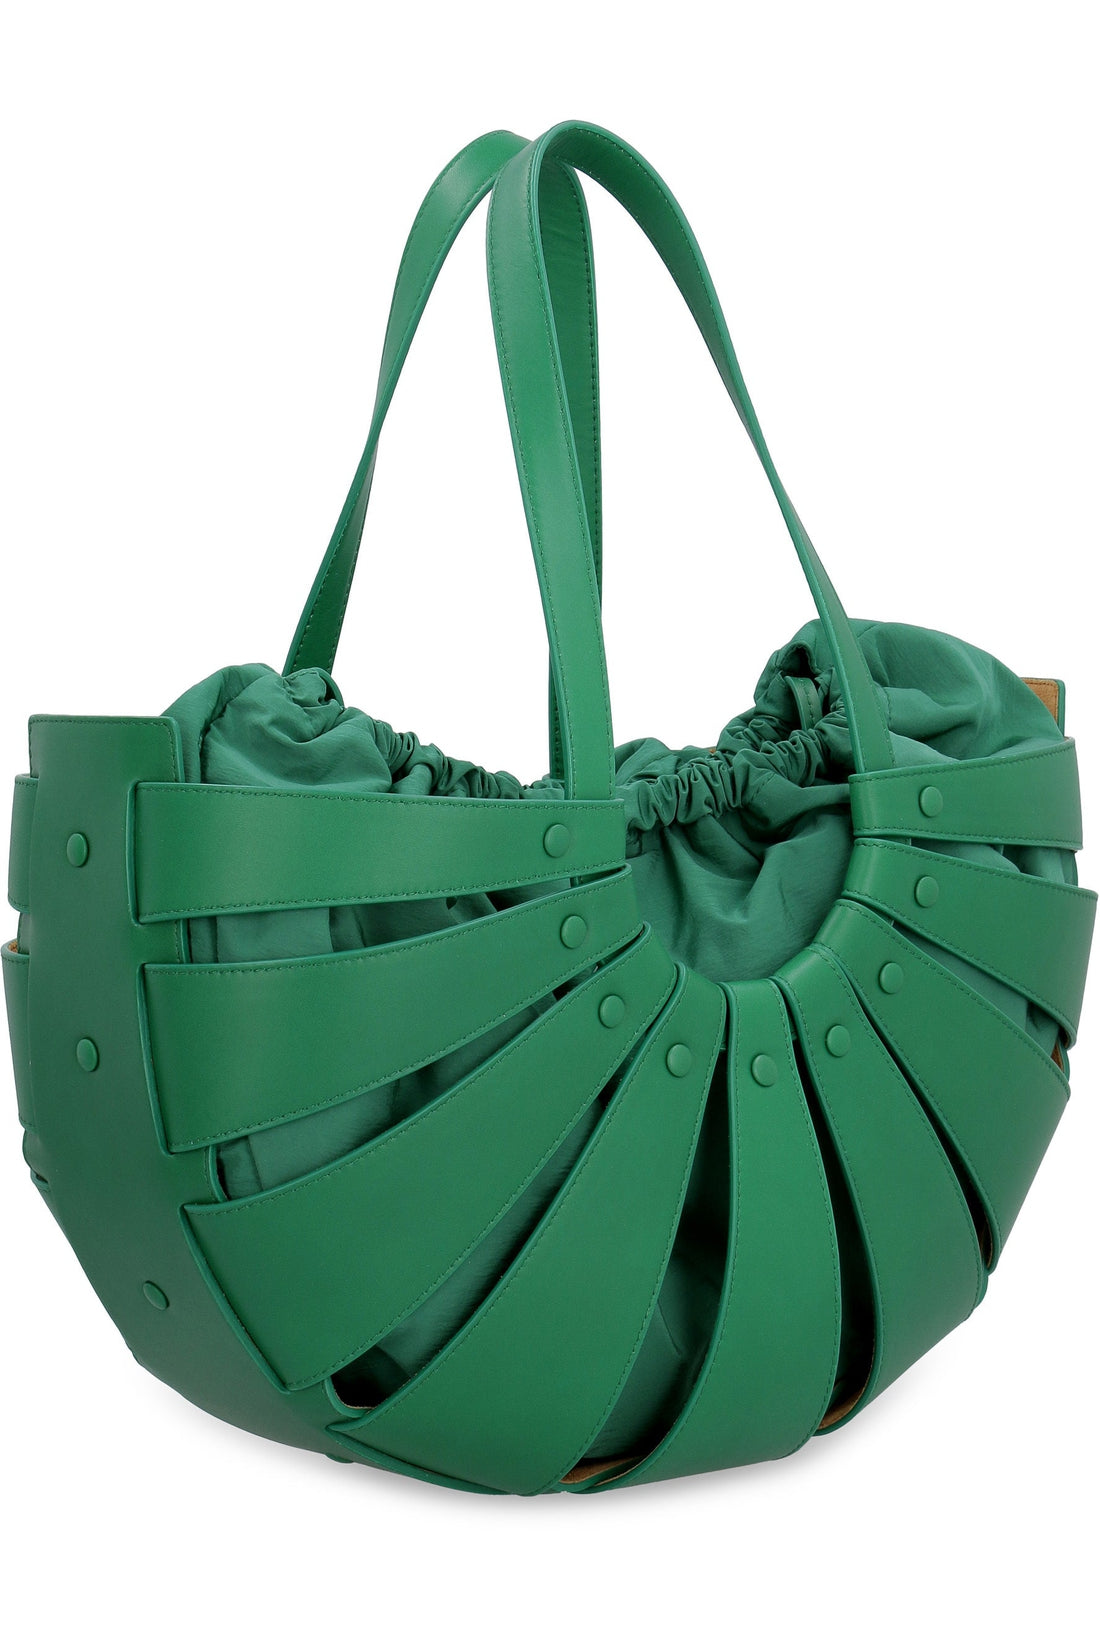 Bottega Veneta-OUTLET-SALE-The Shell leather shoulder bag-ARCHIVIST